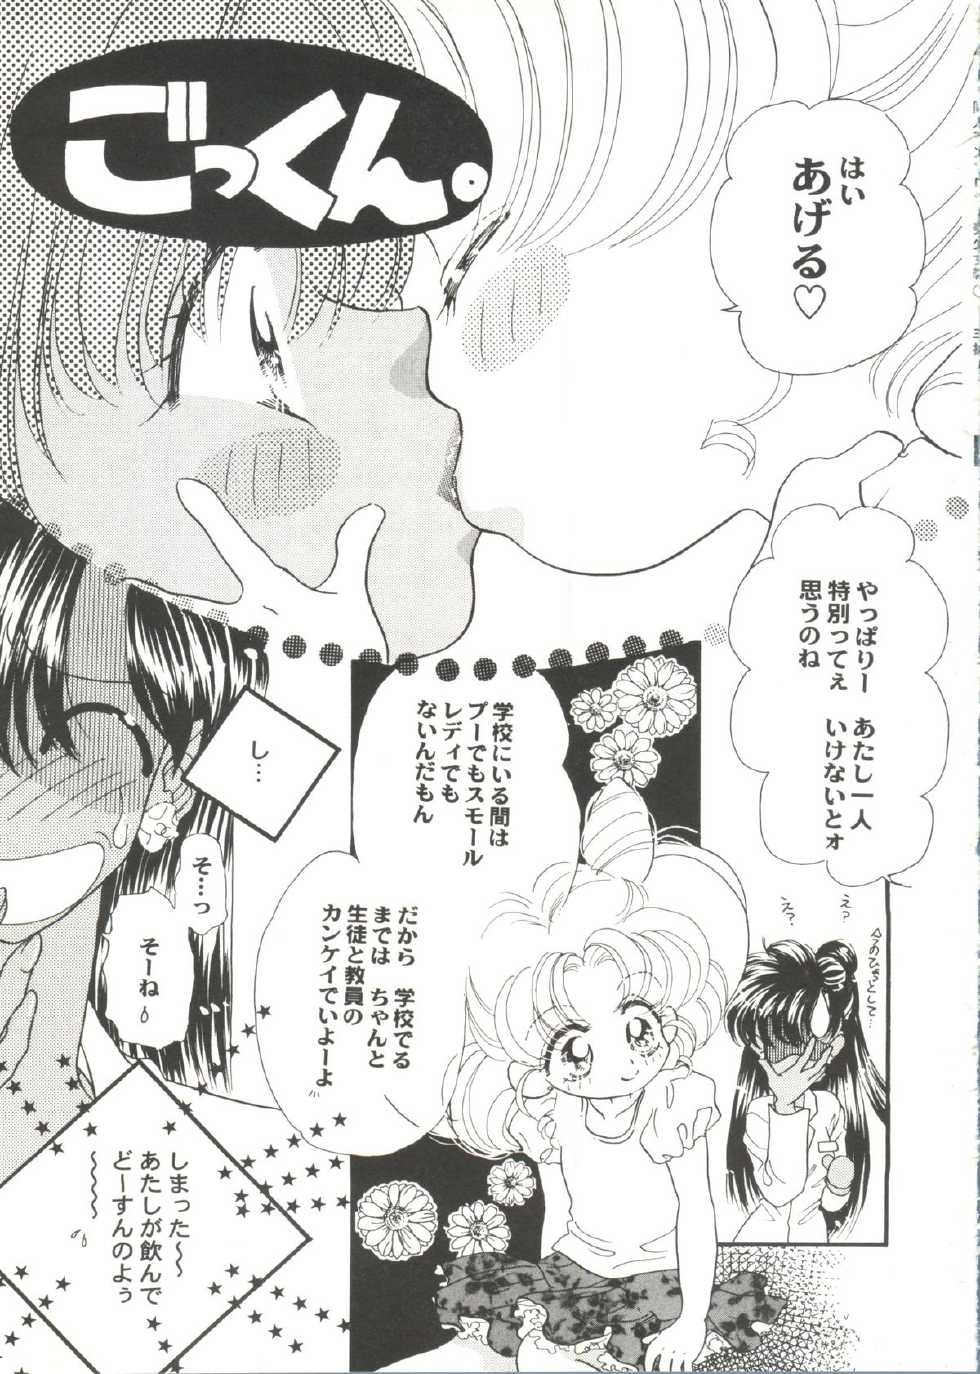 [Anthology] Doujin Anthology Bishoujo Gumi 1 (Various) - Page 35